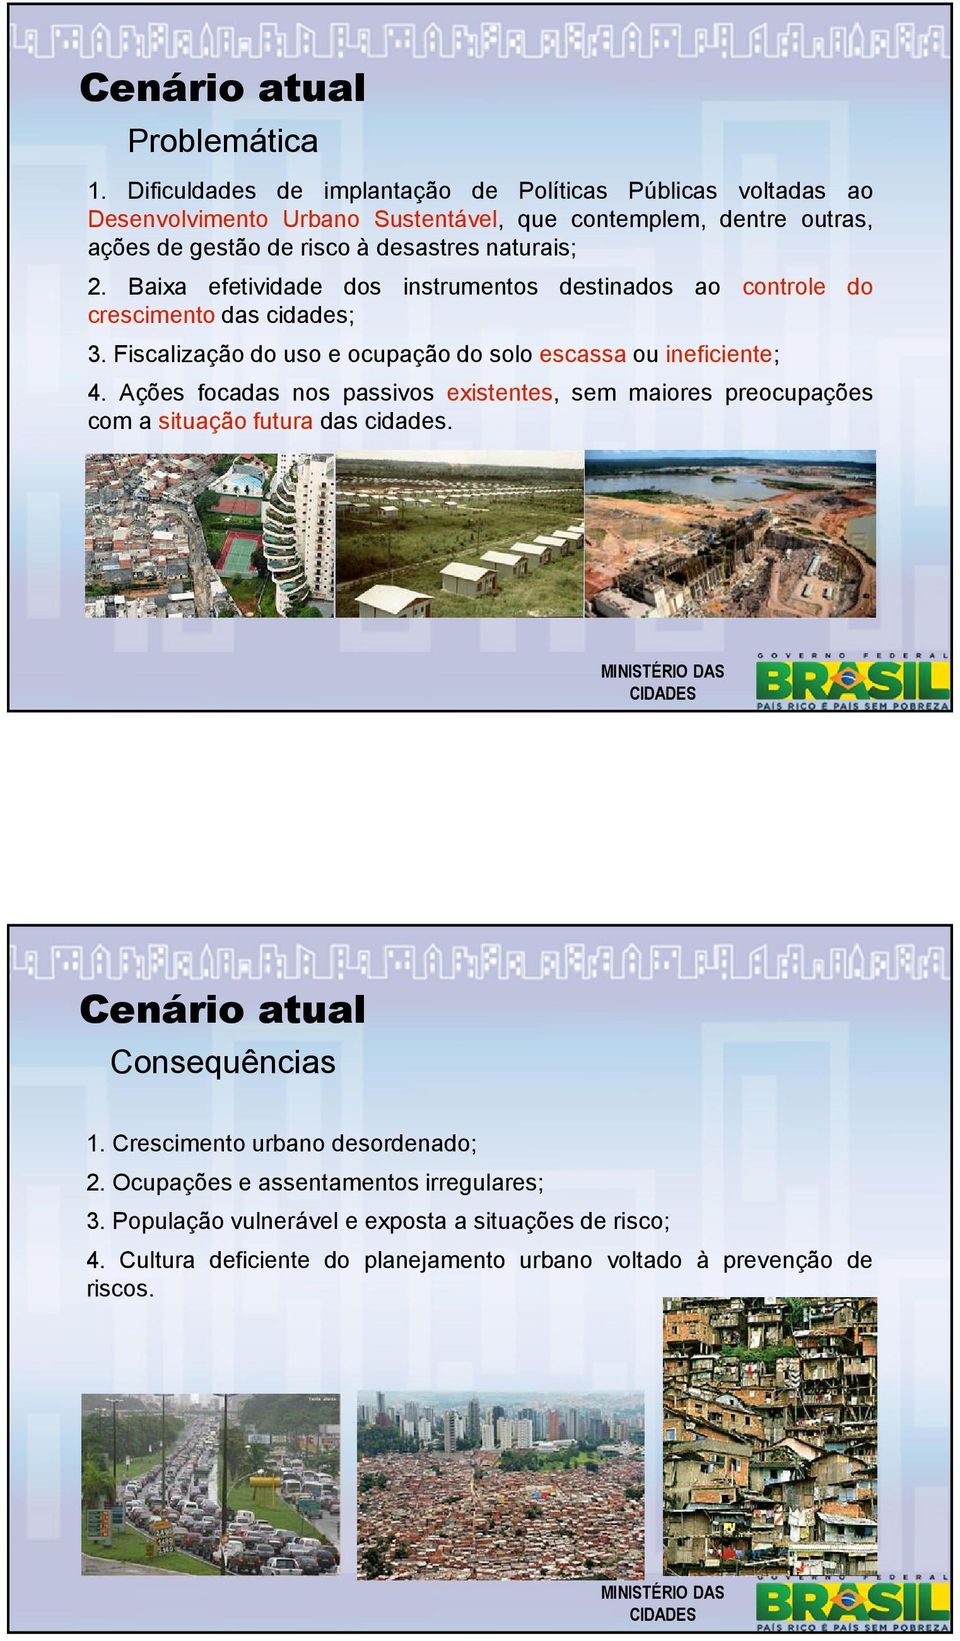 2. Baixa efetividade dos instrumentos destinados ao controle do crescimento das cidades; 3. Fiscalização do uso e ocupação do solo escassa ou ineficiente; 4.